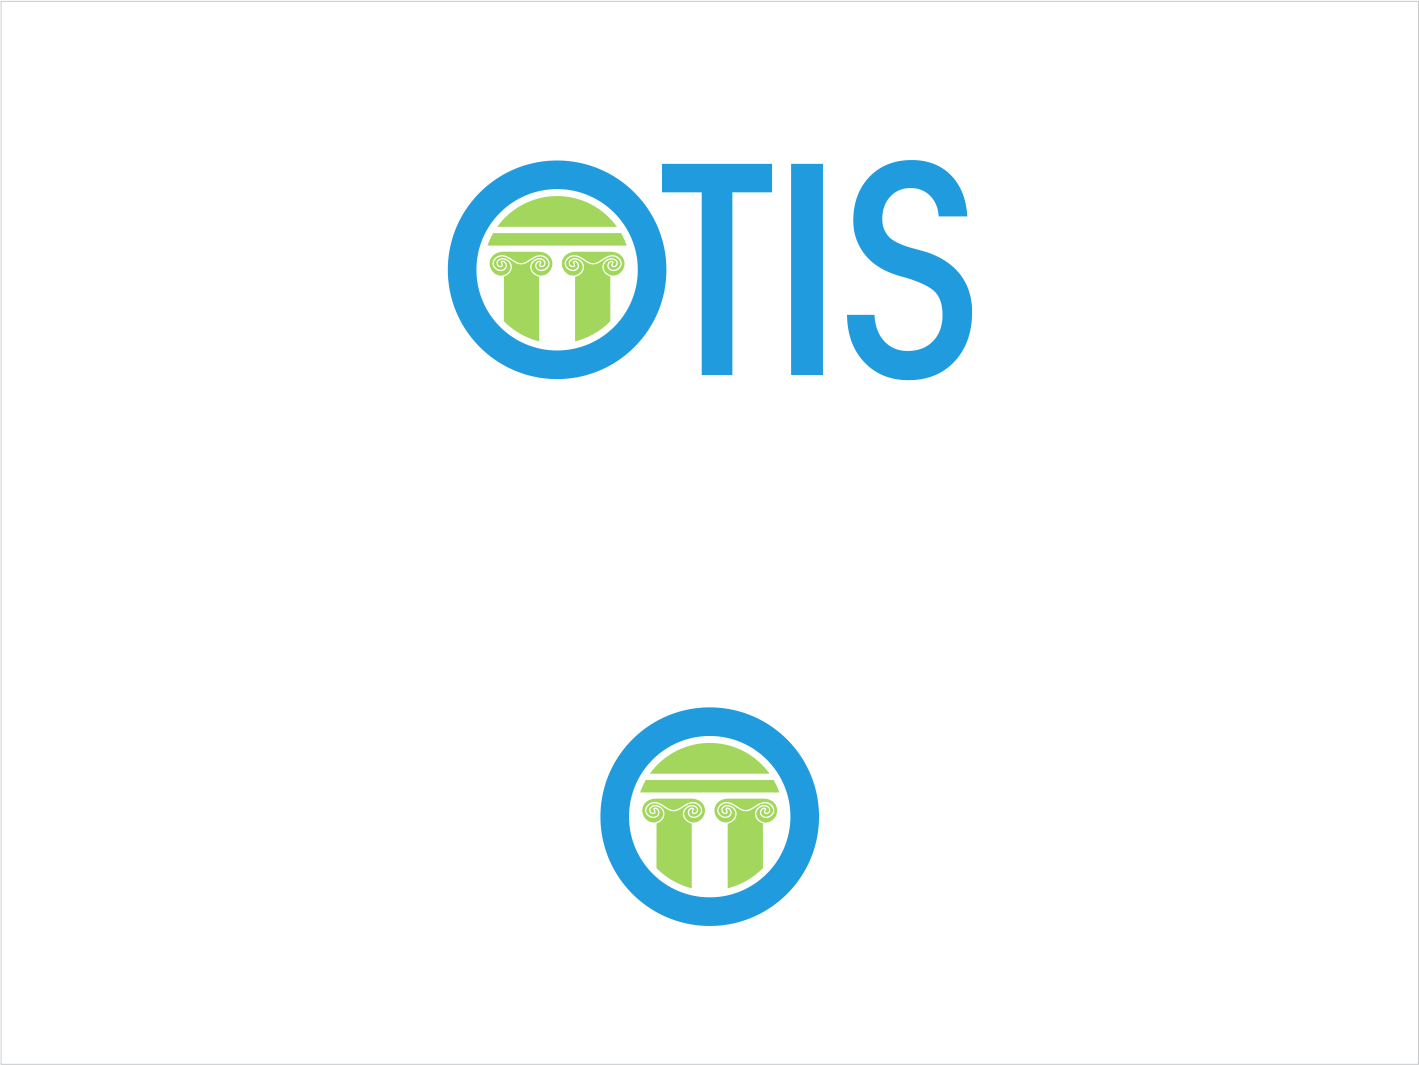 Otis Logo - Serious, Modern, Electric Company Logo Design for OTIS